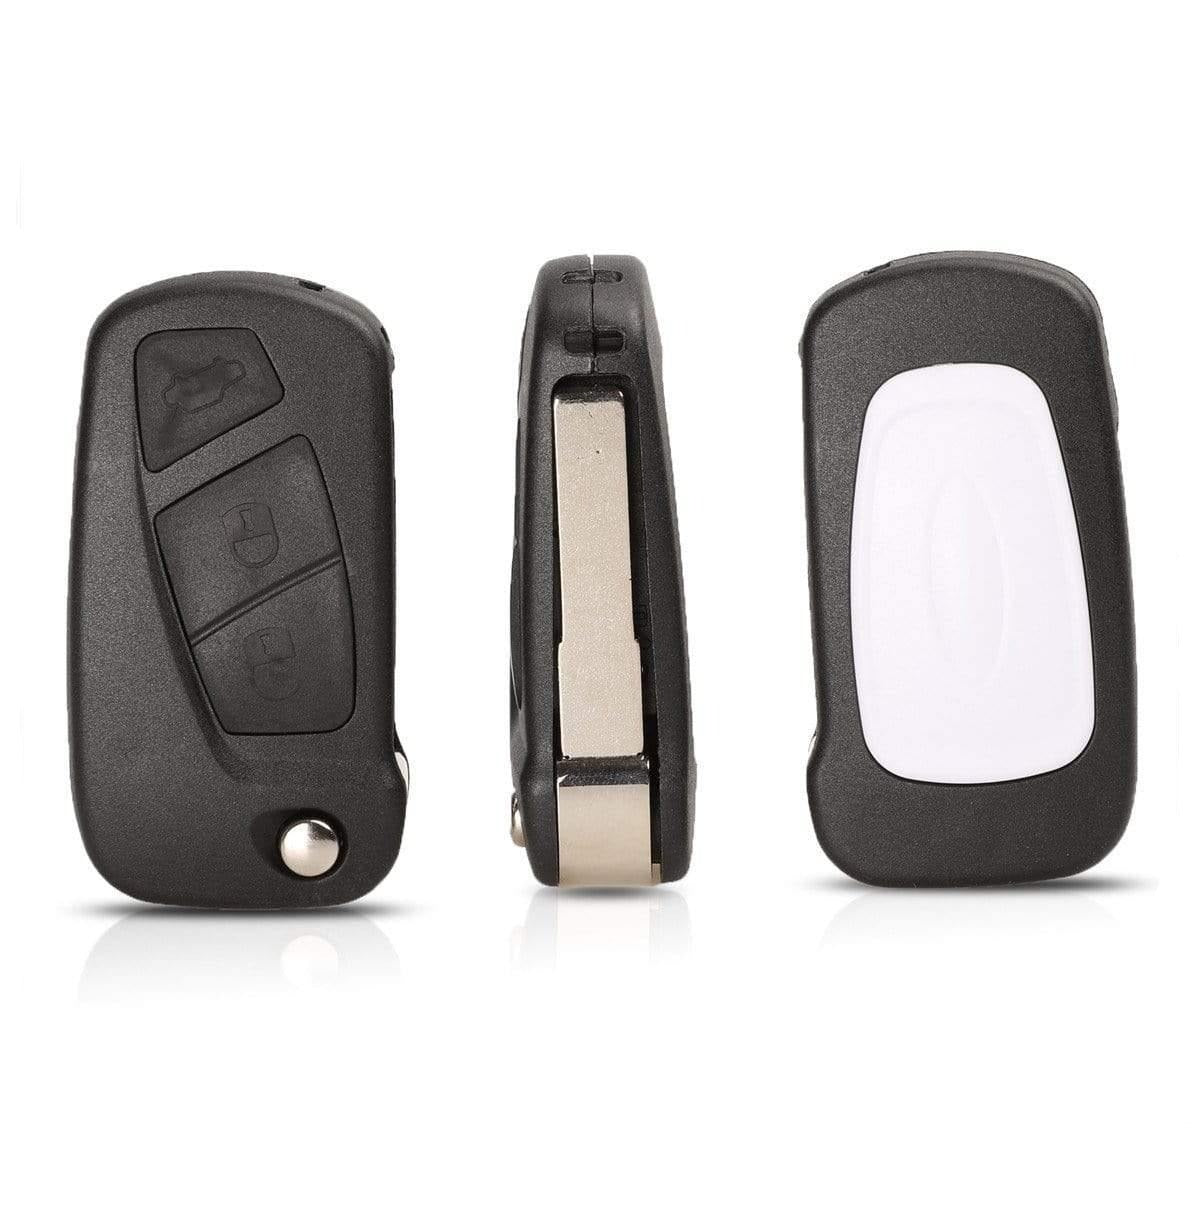 Fekete színű, 2 gombos Fiat kulcsház, bicskakulcs eleje, oldala és hátulja. SIP22 kulcsszárral.